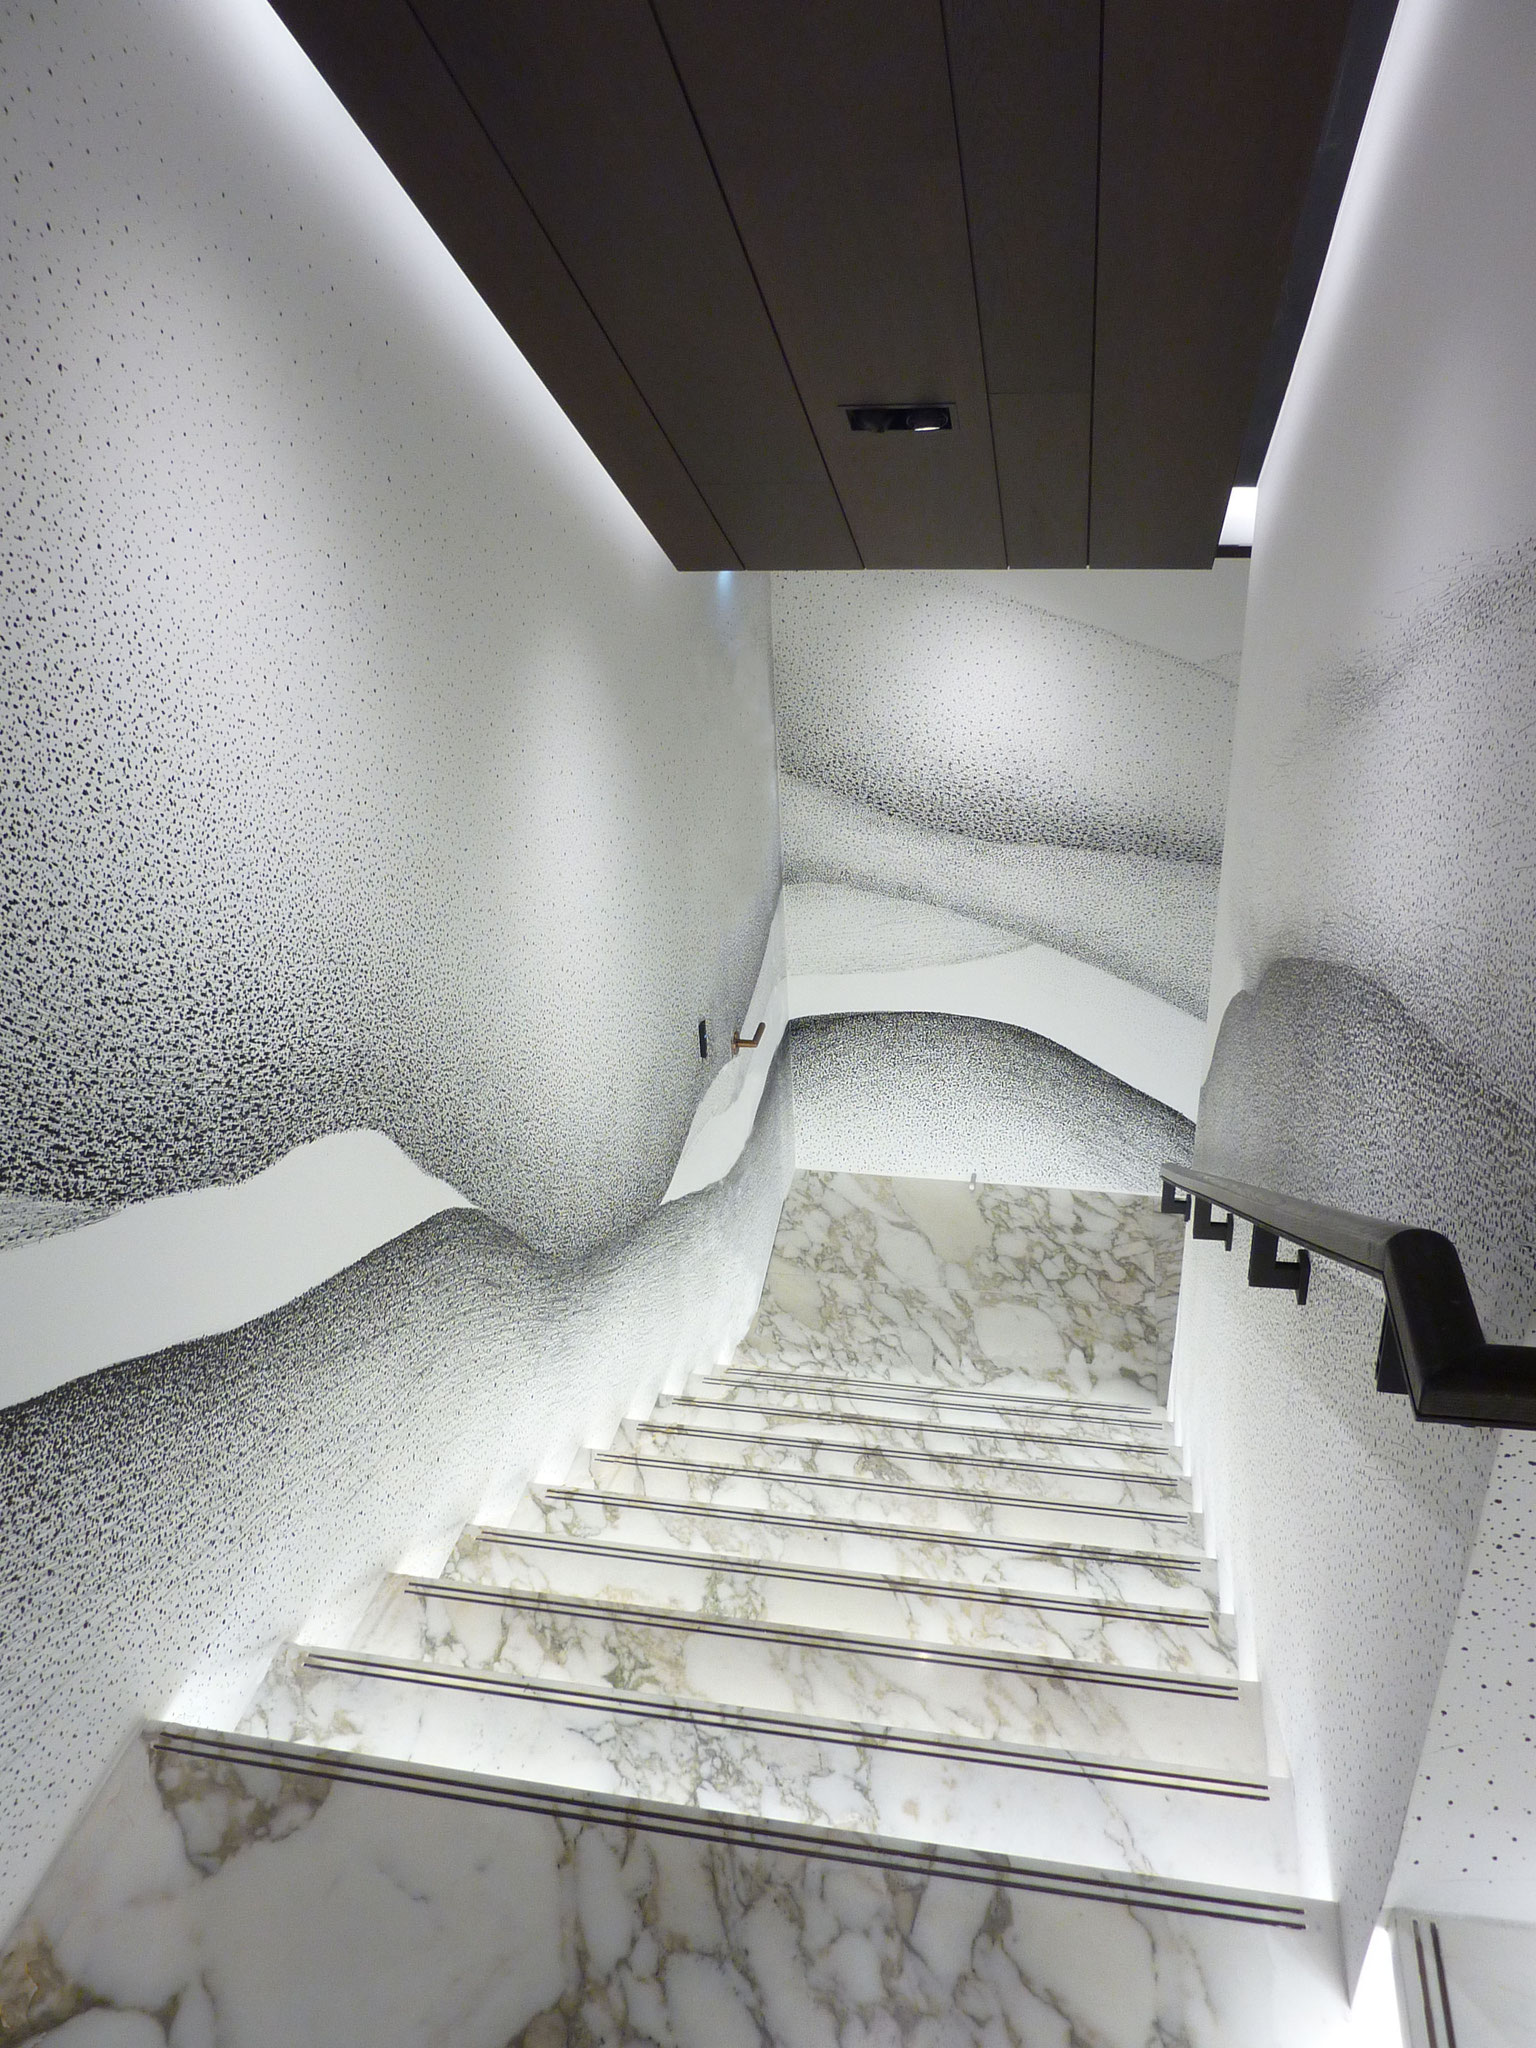 Moncler, Seoul for Gilles & Boissier Interior Design